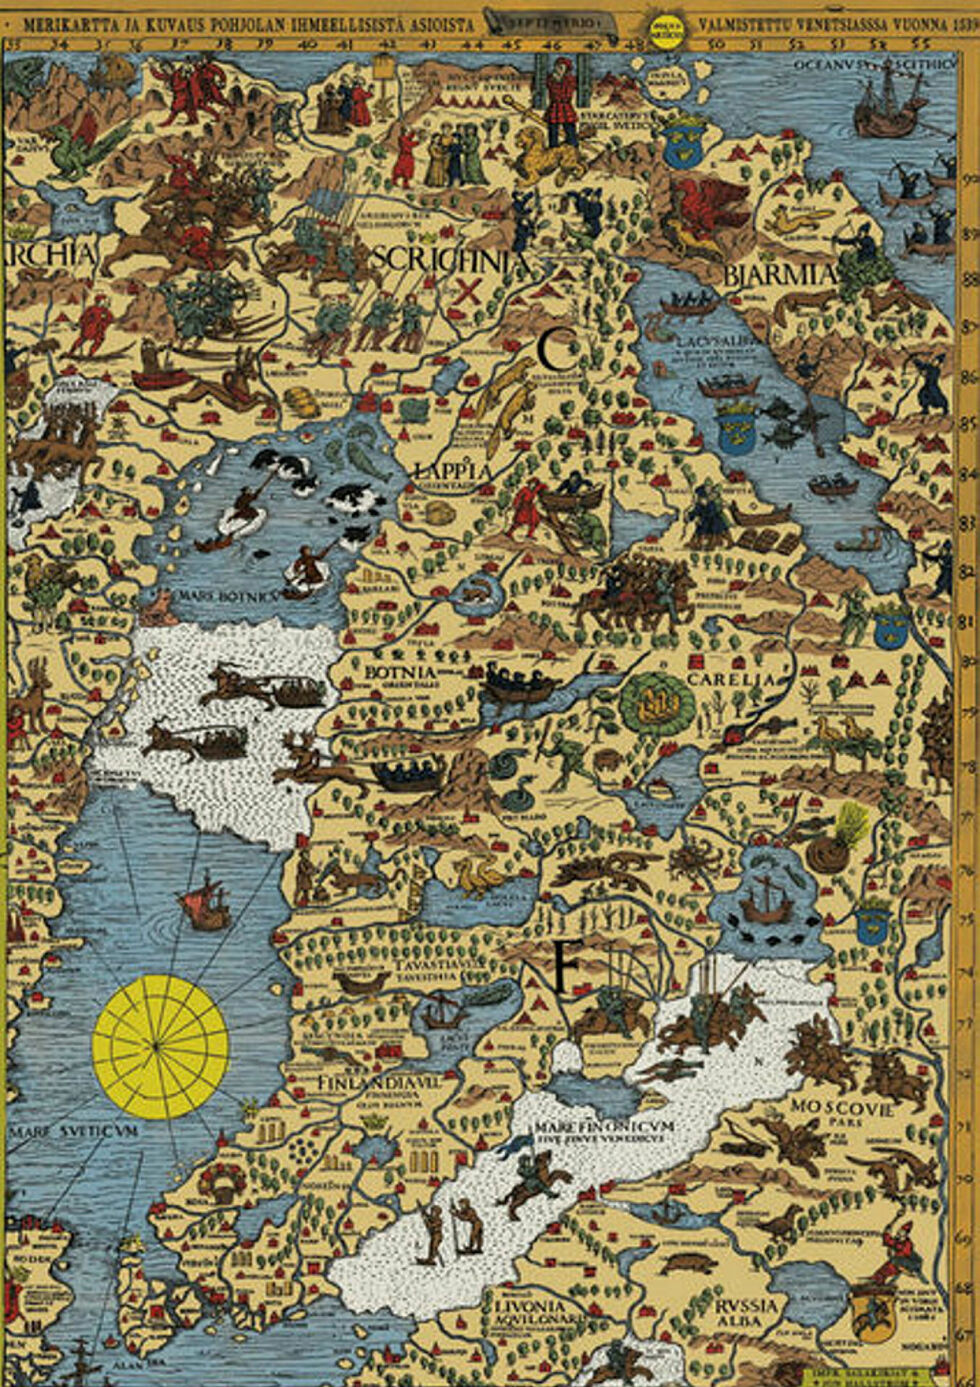 Olaus Magnus Carta marina viser deler av Sápmi og Kvænland slik man så for seg landet i middelalderen.
 Foto: Ukjent